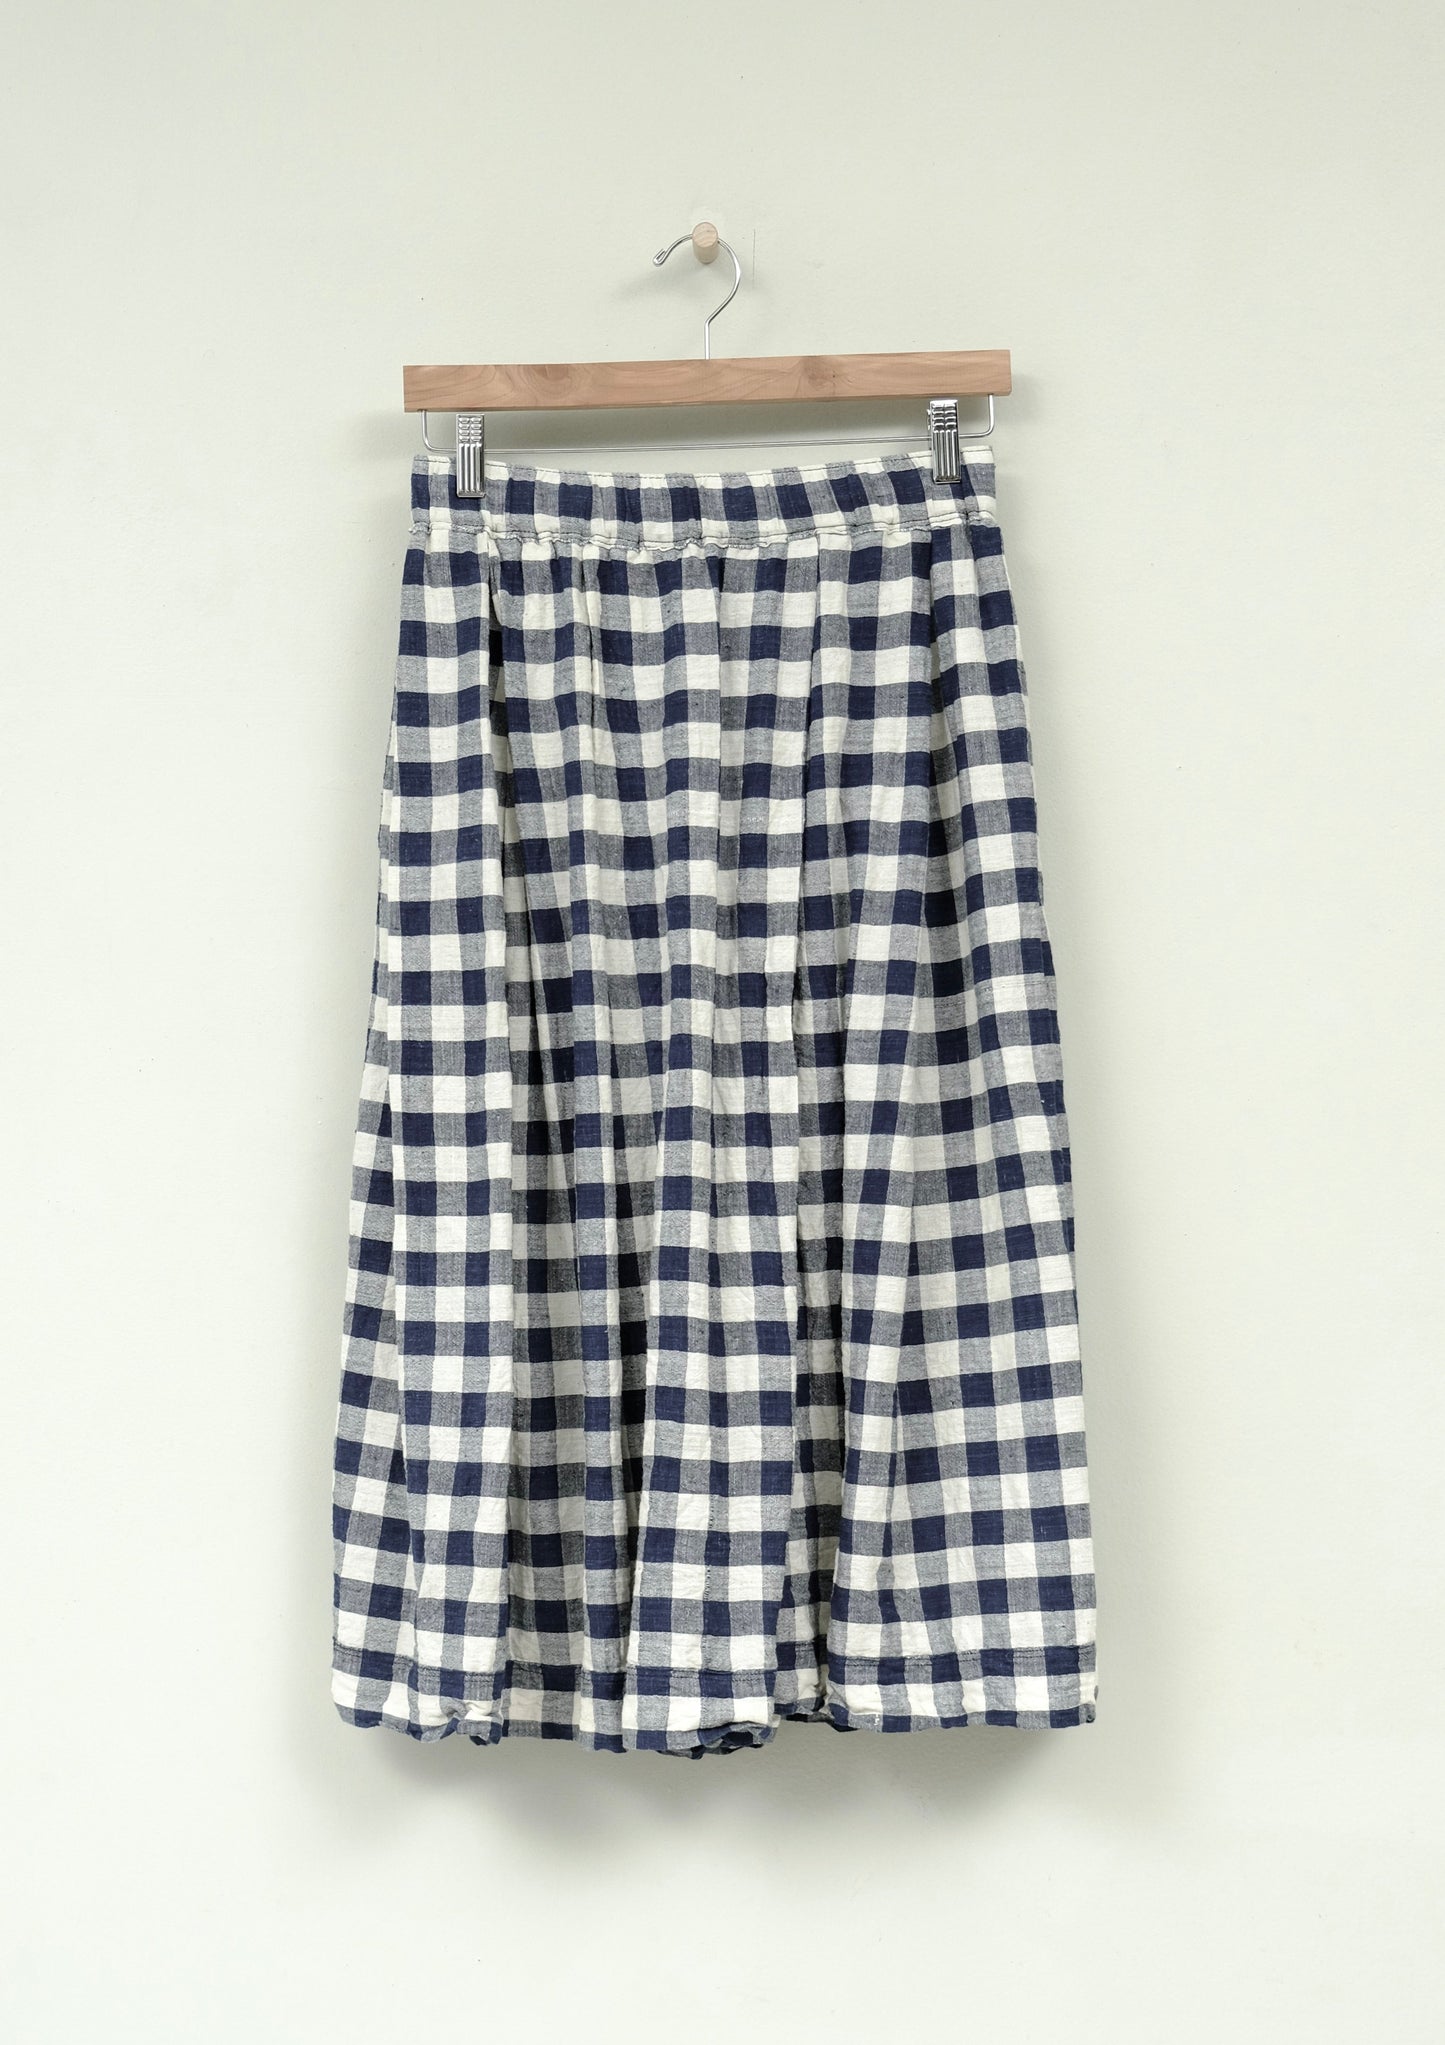 indigo gingham belle skirt on hanger